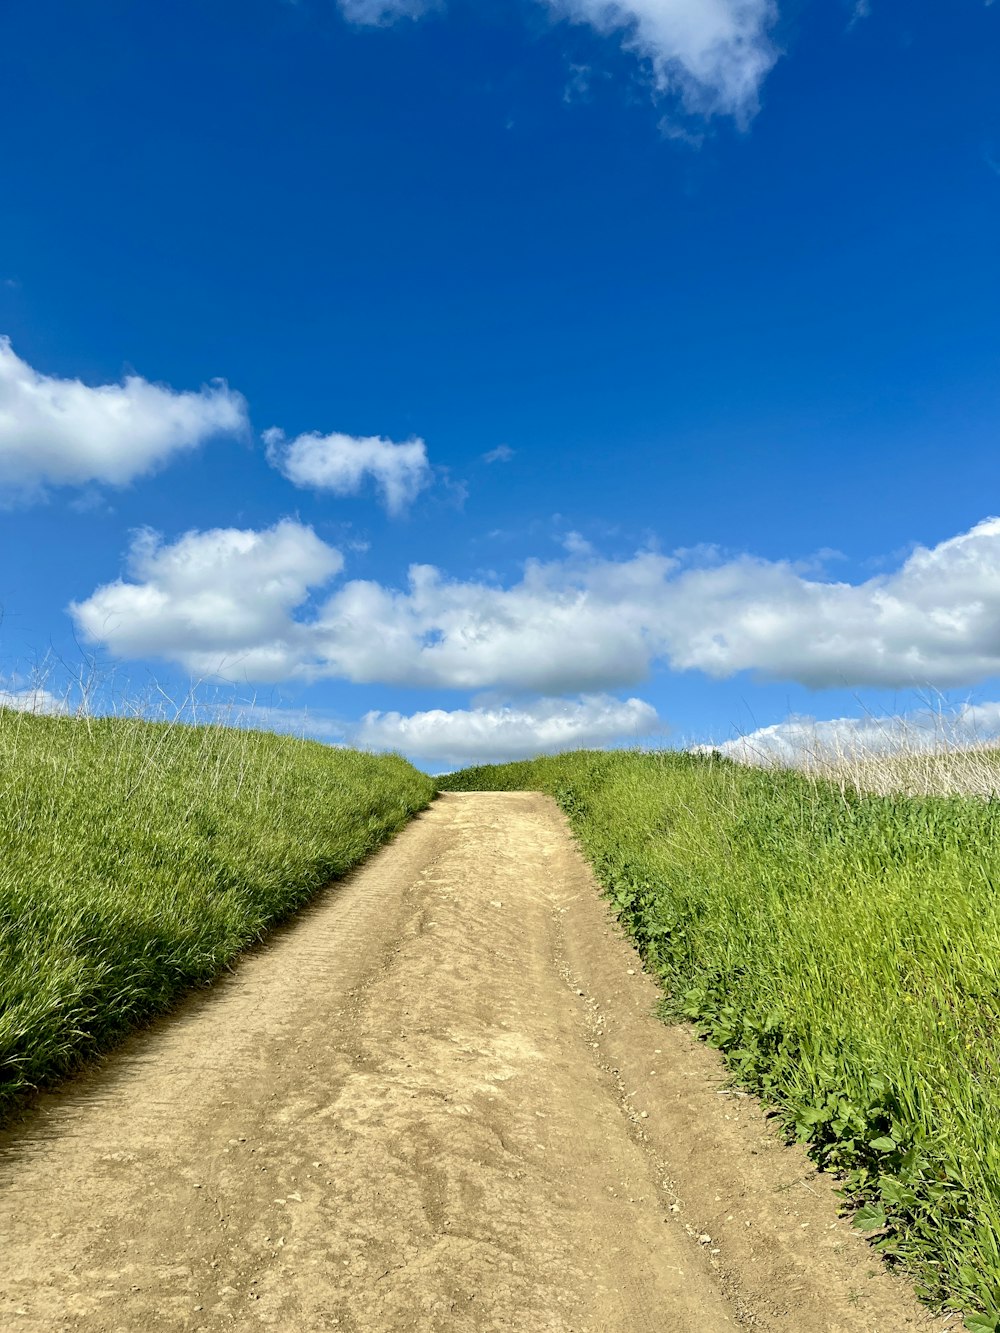 Un camino de tierra en medio de un campo de hierba